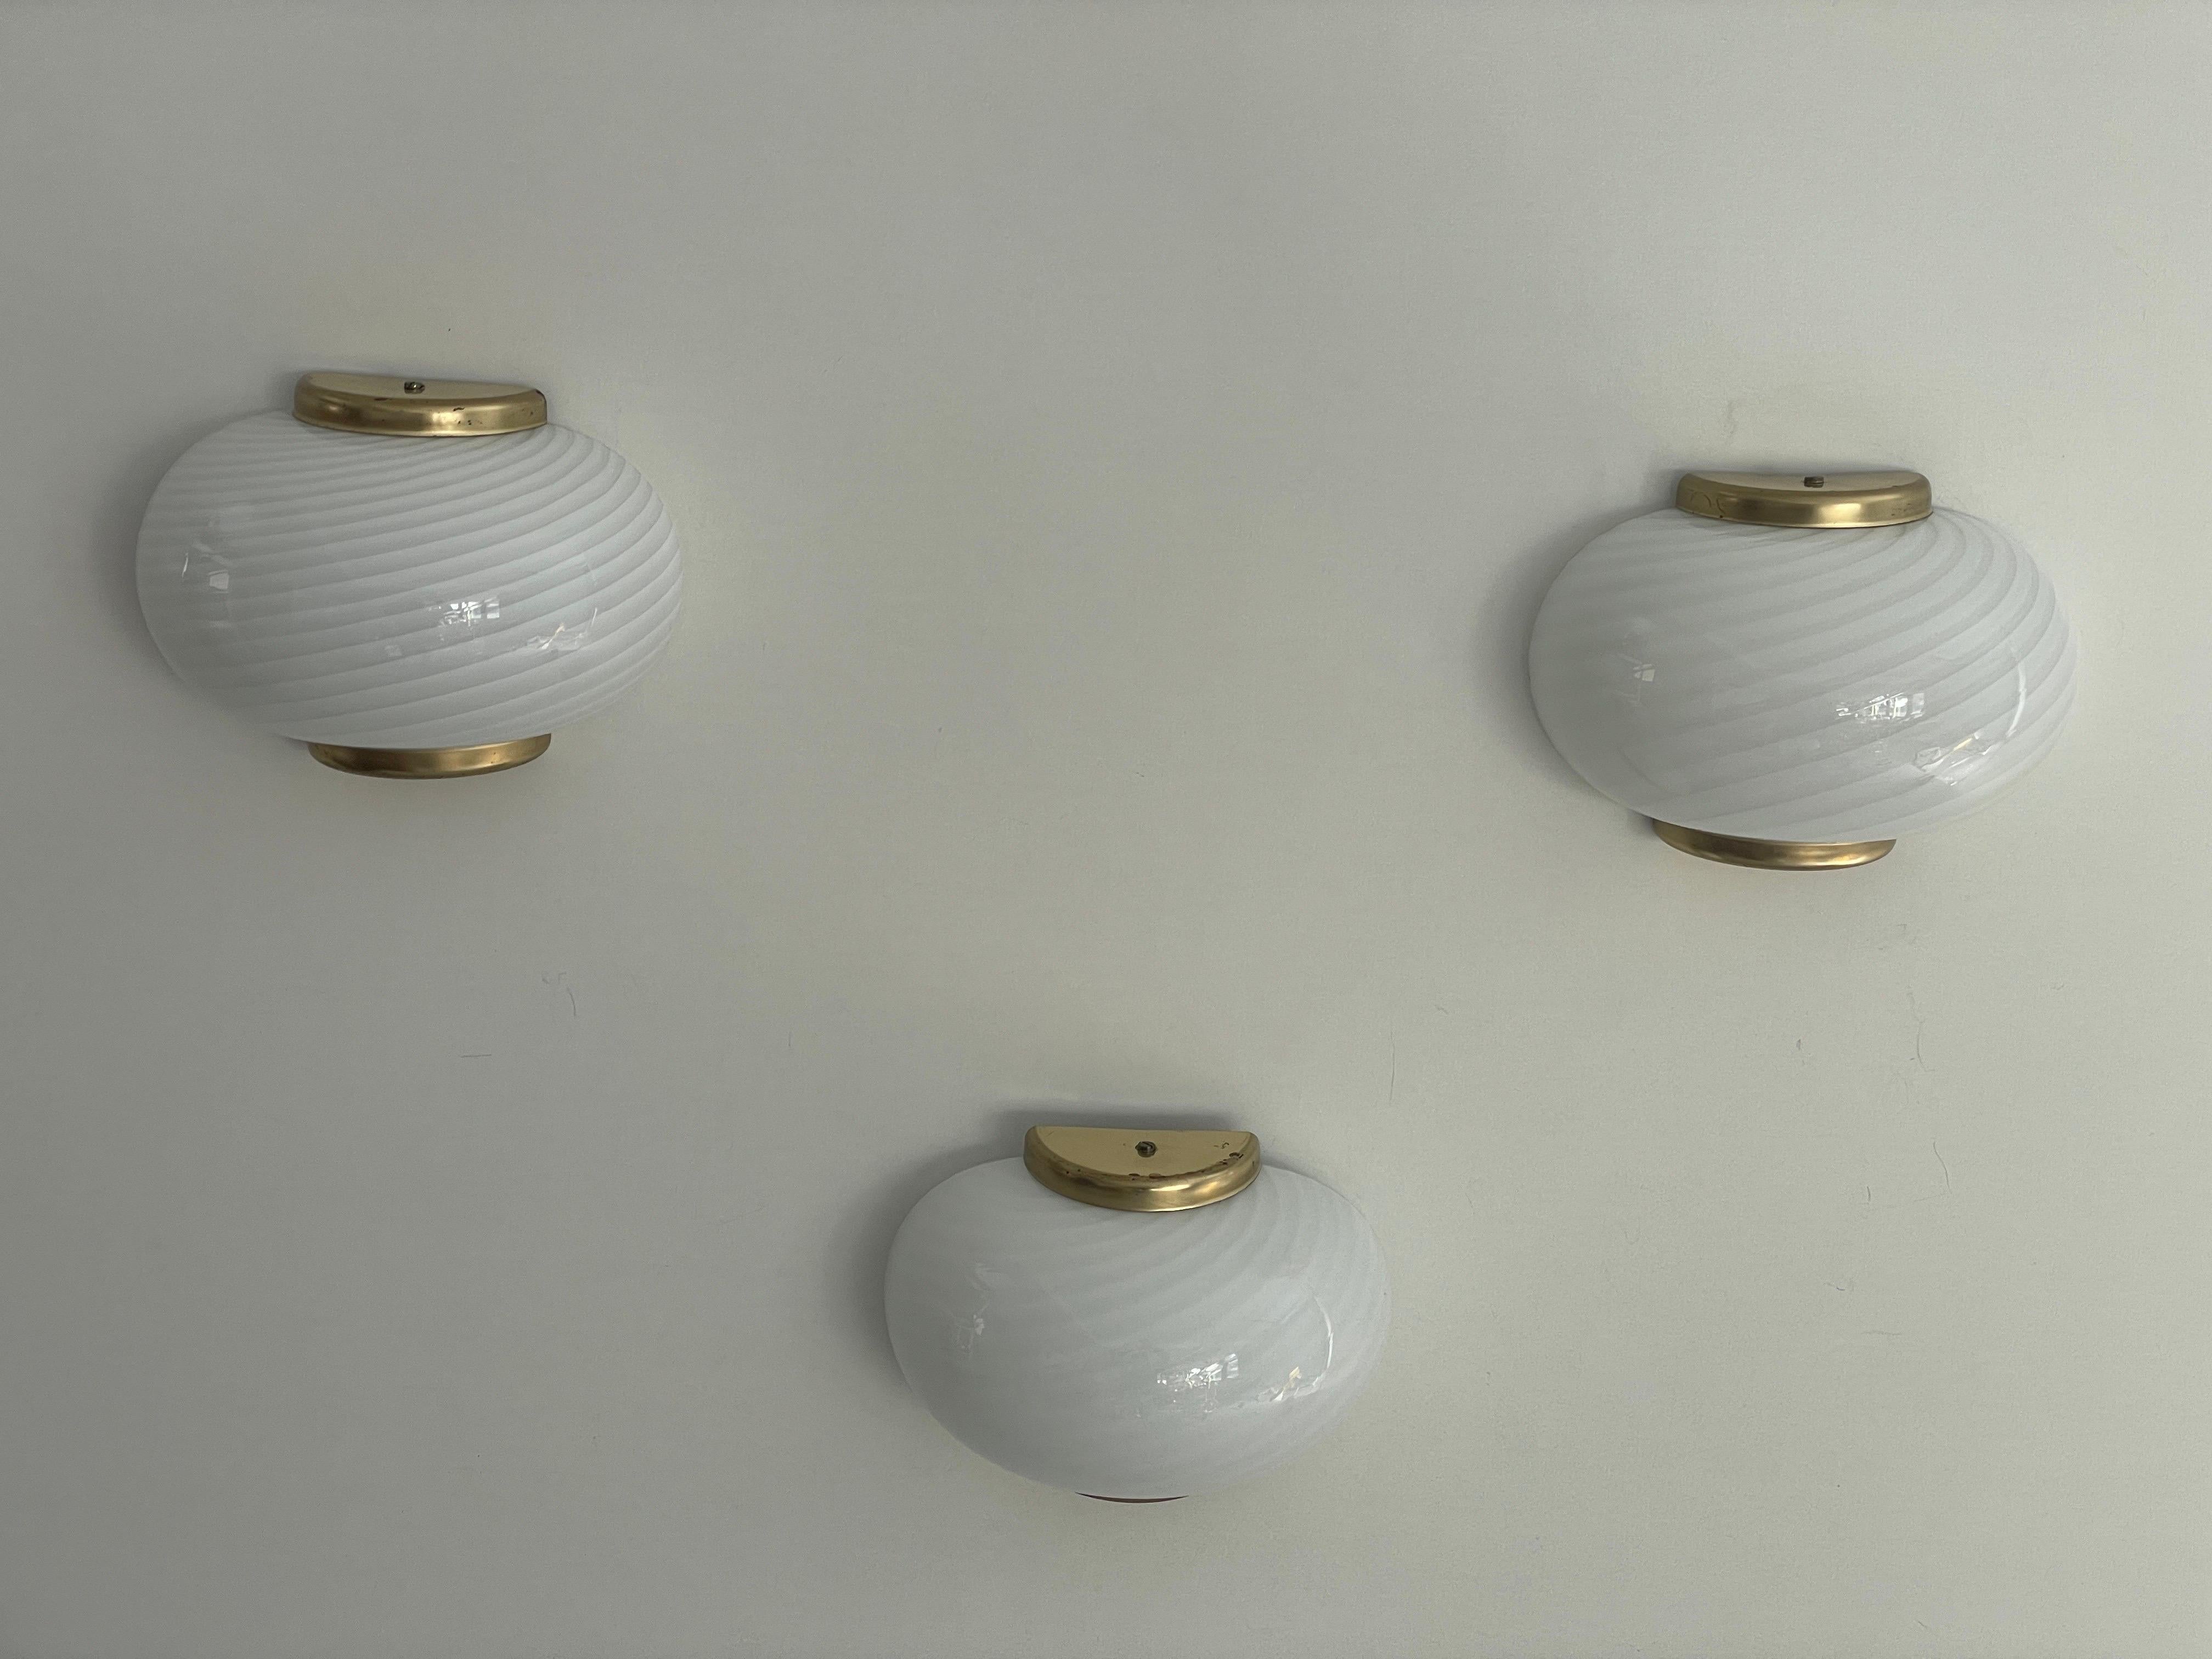 Satz von 3 Wandleuchtern aus Murano-Glas und Messing mit Wirbelmuster von Beatrix, 1970er Jahre, Italien

Sehr elegante und minimalistische Wandlampen.
Die Lampe ist in sehr gutem Zustand.

Diese Lampen funktionieren mit E14 Standard-Glühbirnen.